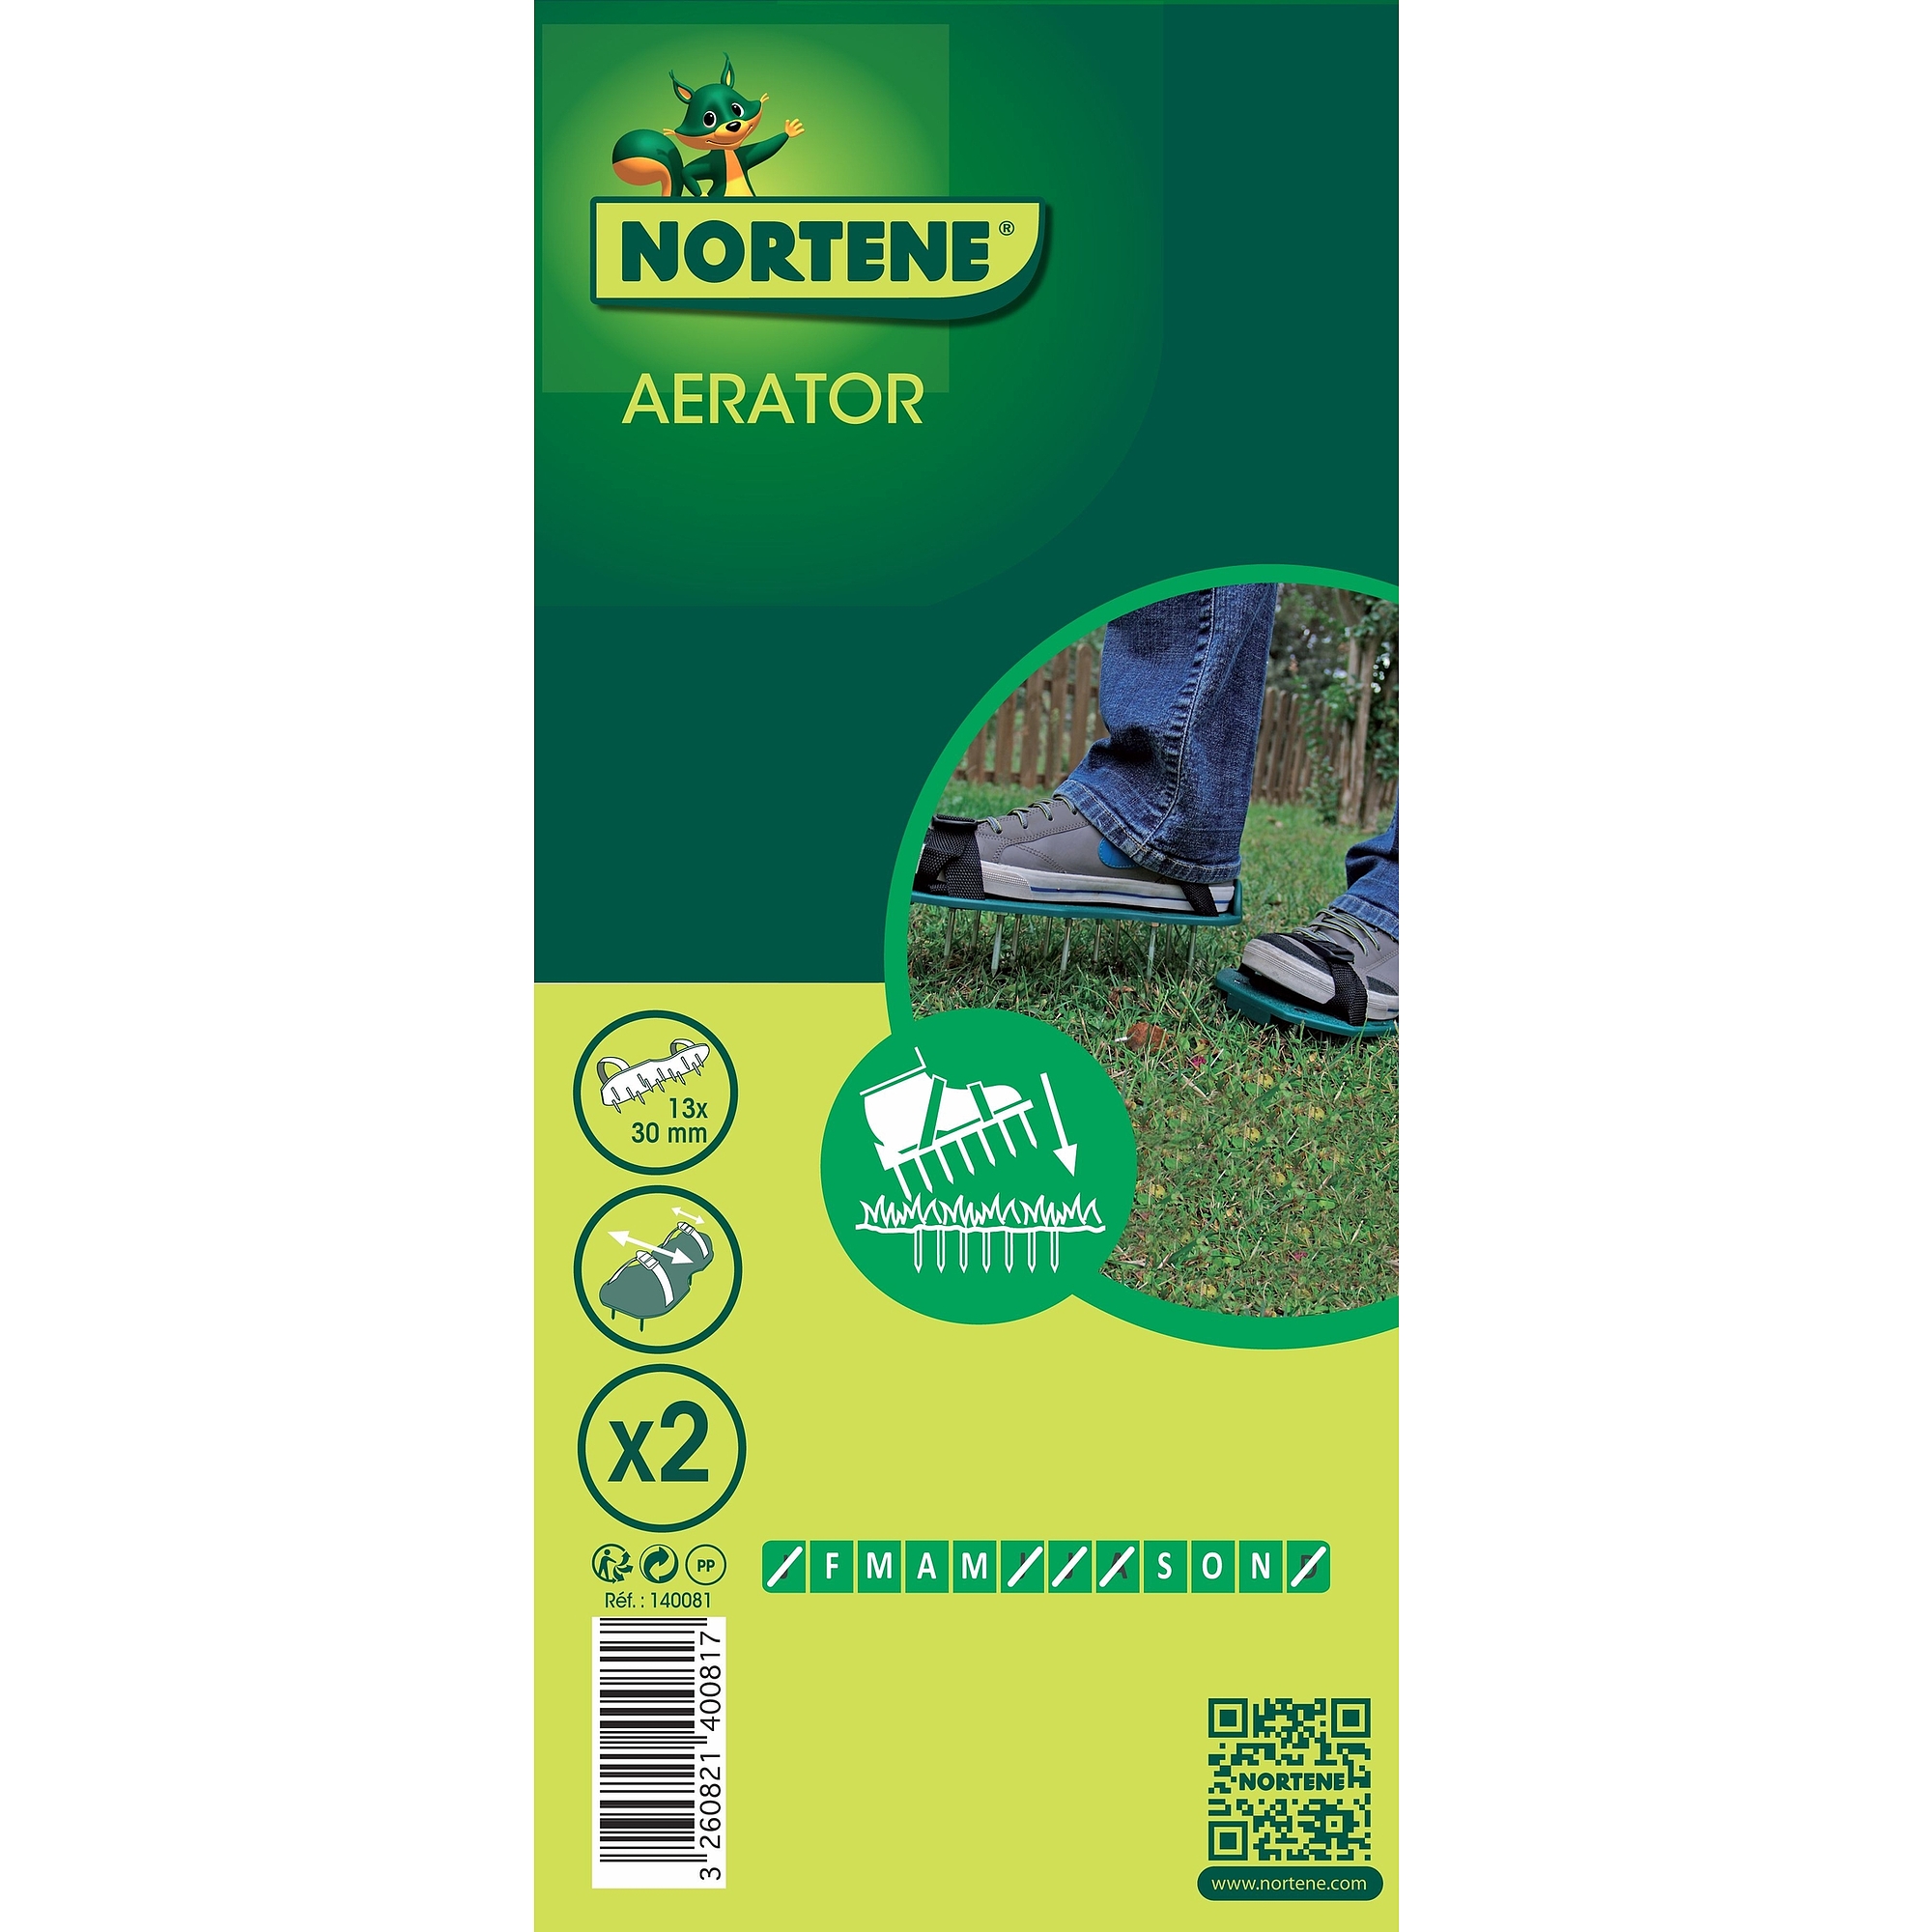 Nortene AERATOR gyepszellőztető - zöld - 140081